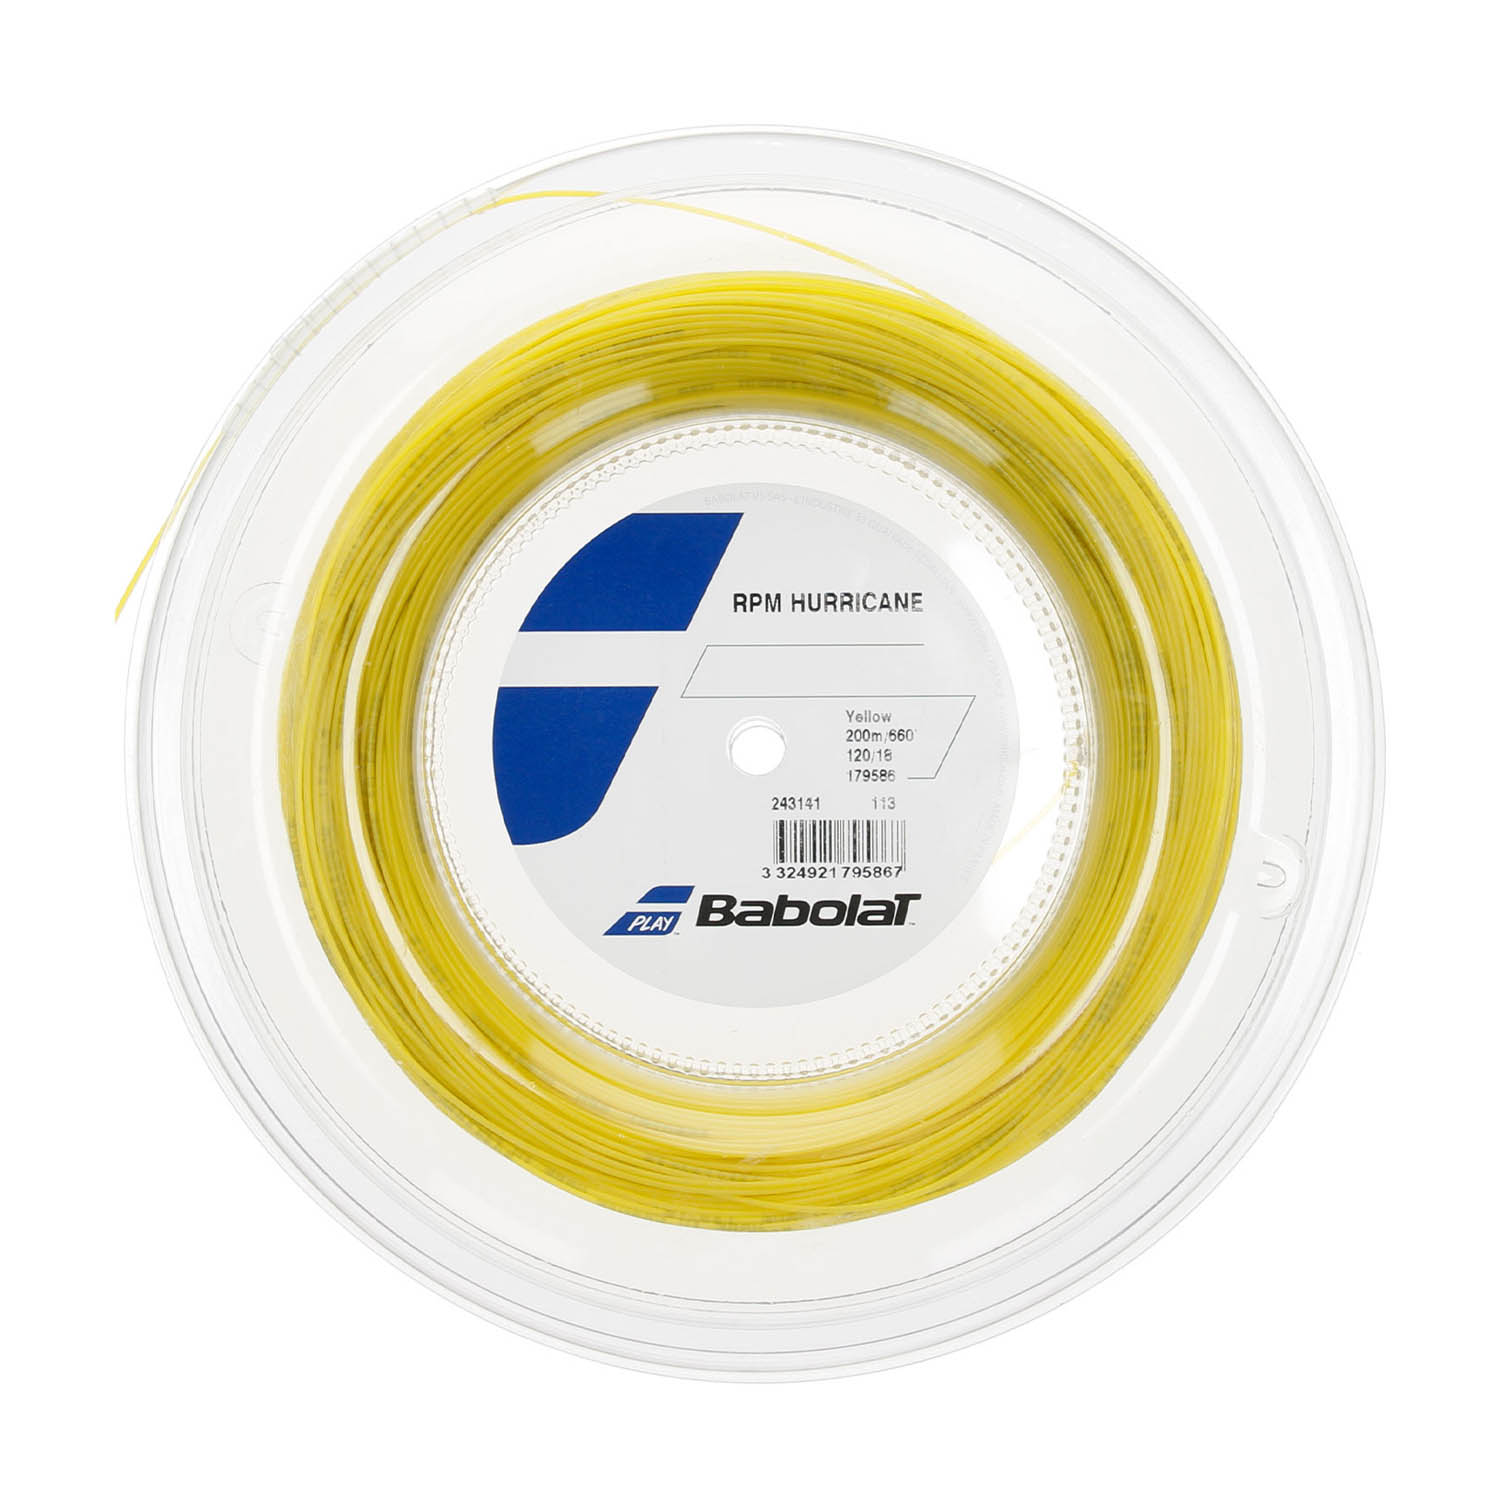 Babolat RPM Hurricane 1.20 Bobina 200 m - Yellow